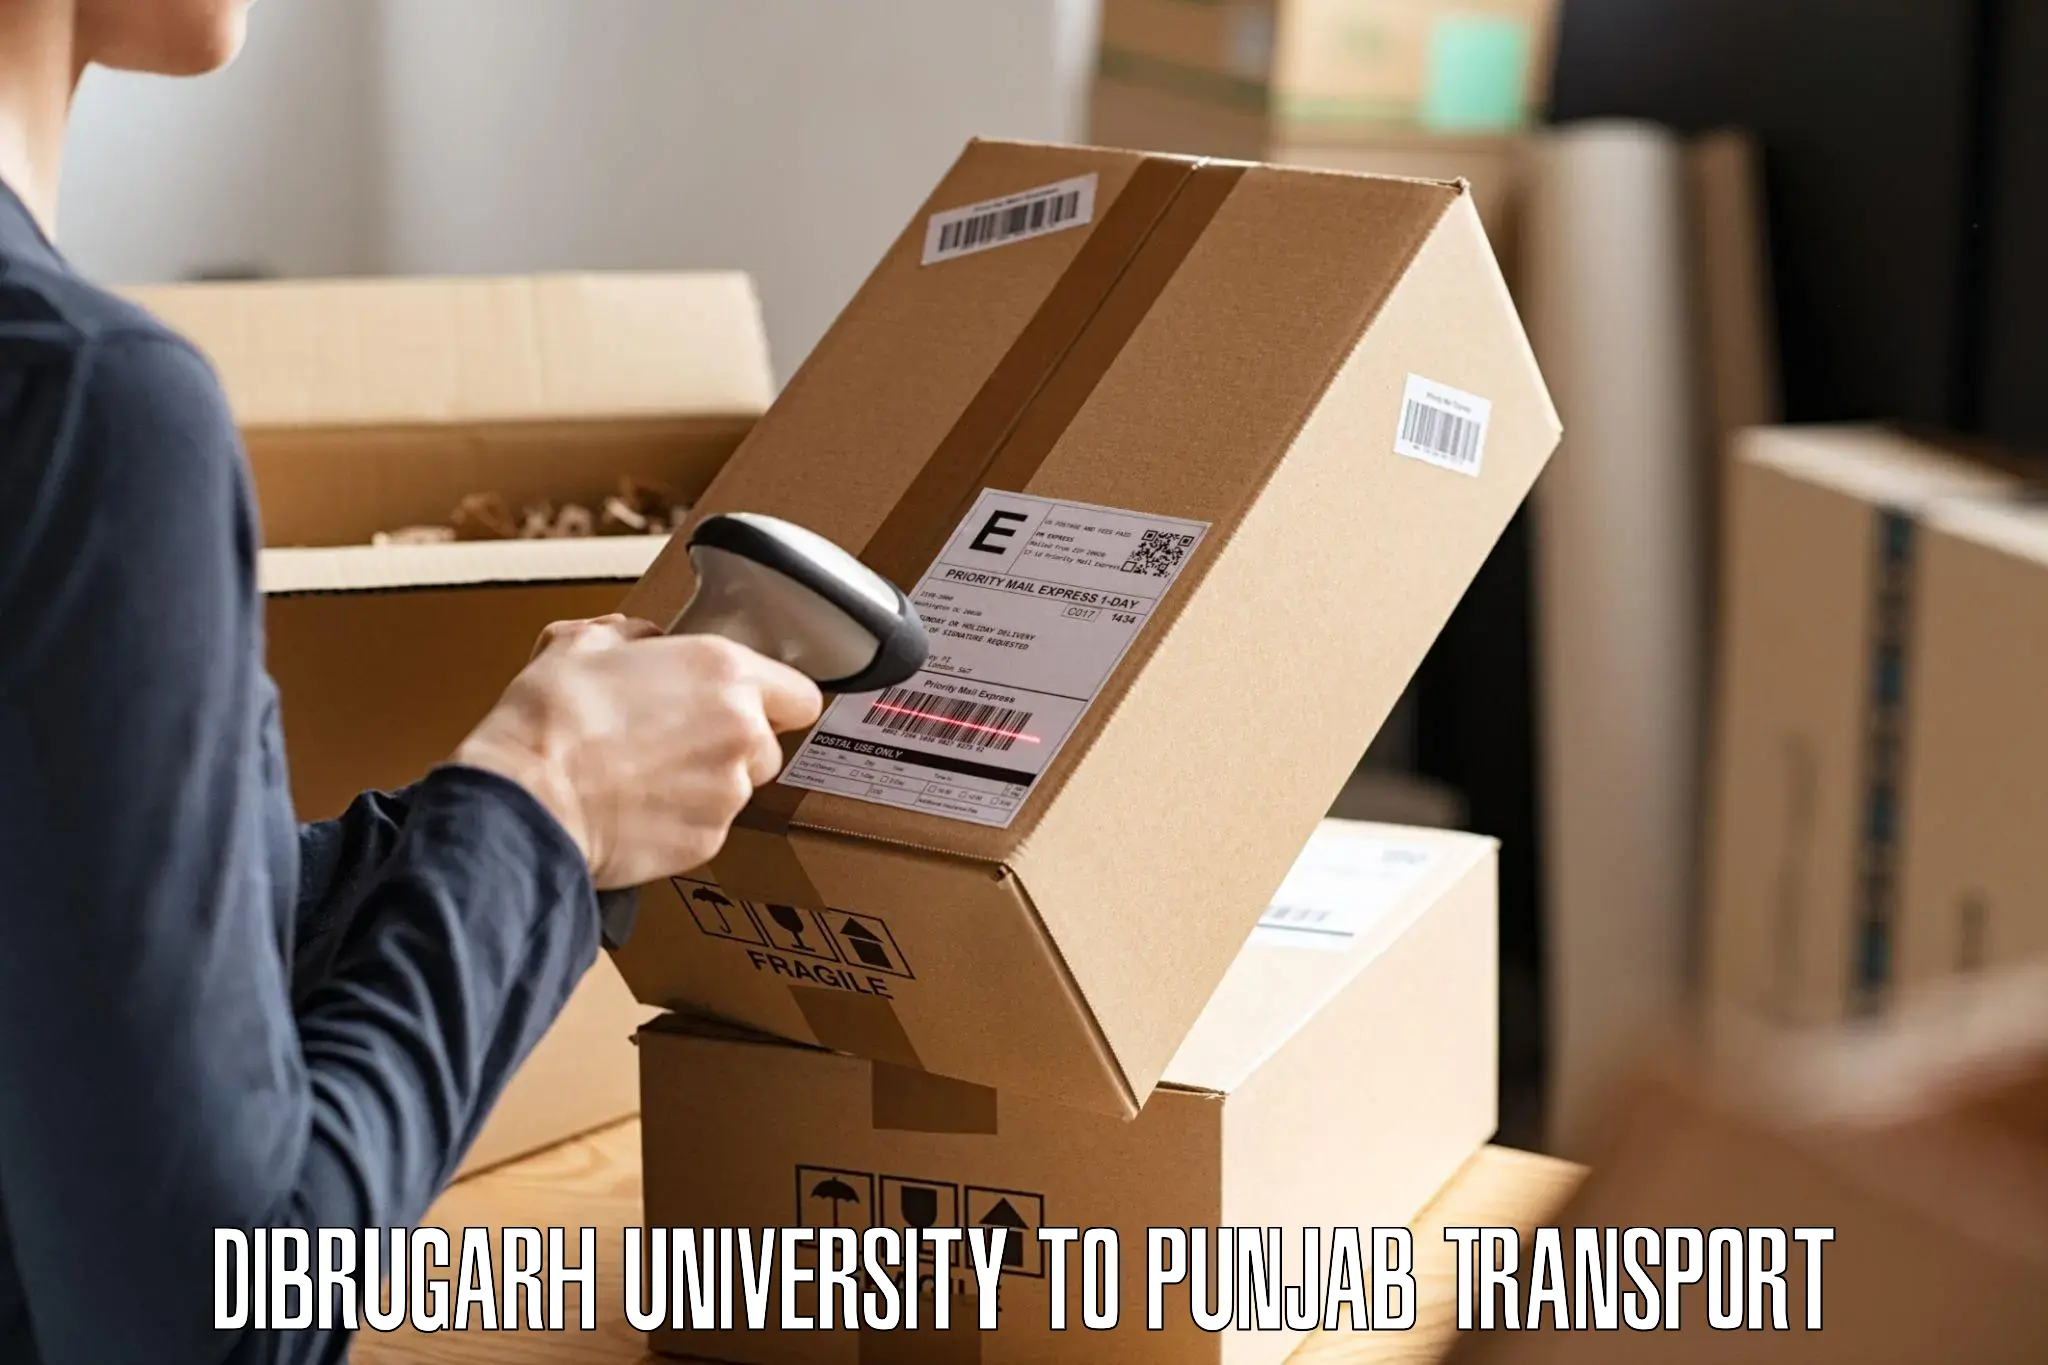 Online transport Dibrugarh University to Giddarbaha